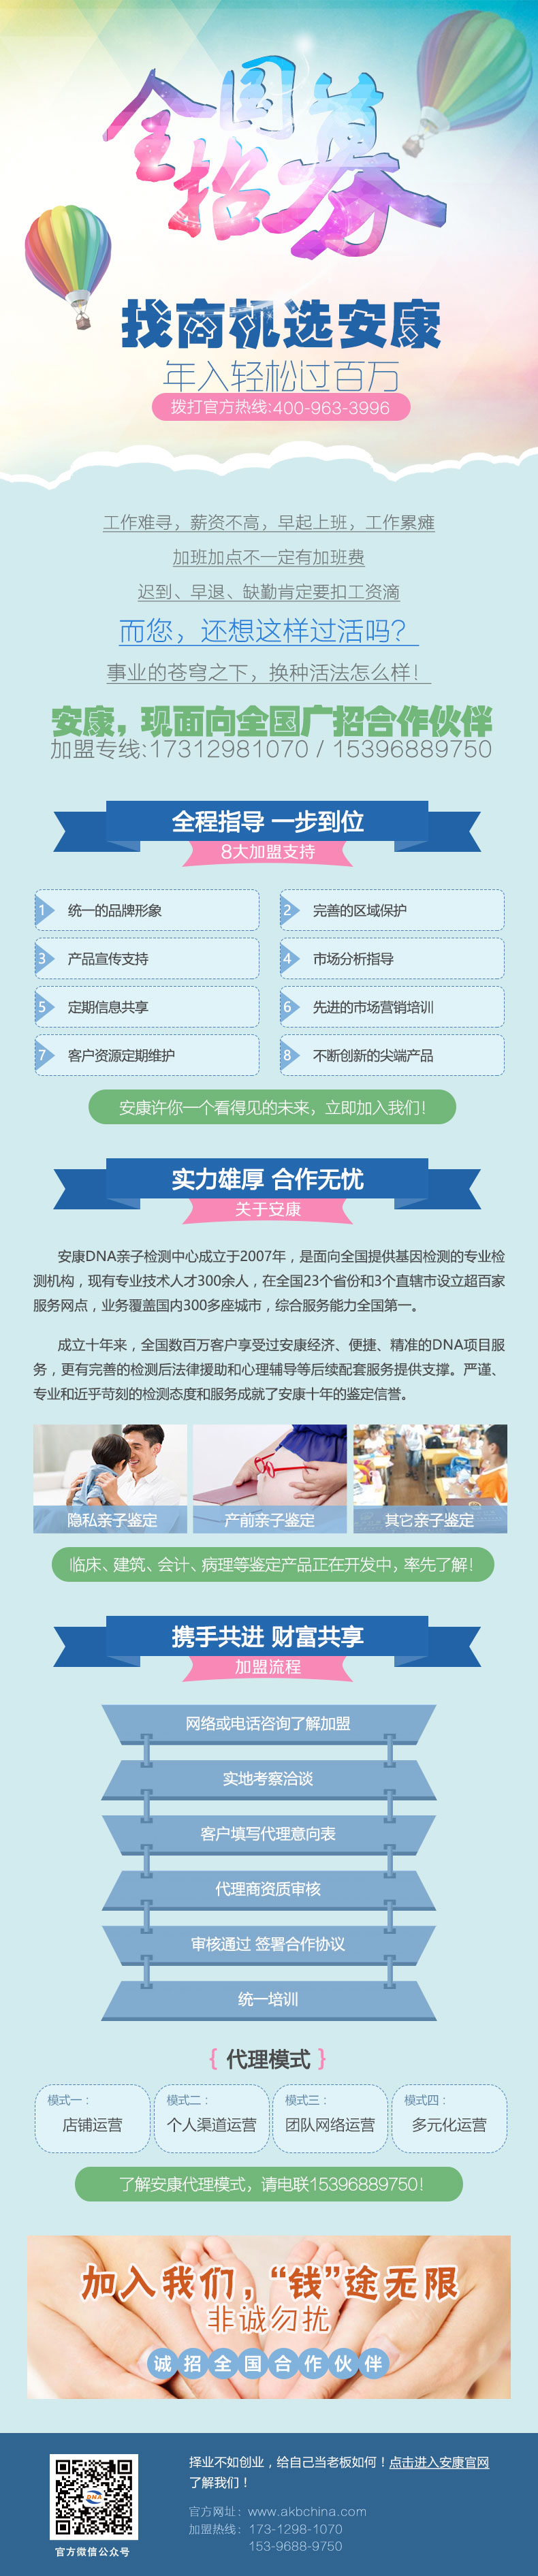 上海安康国内招募事业合作伙伴 